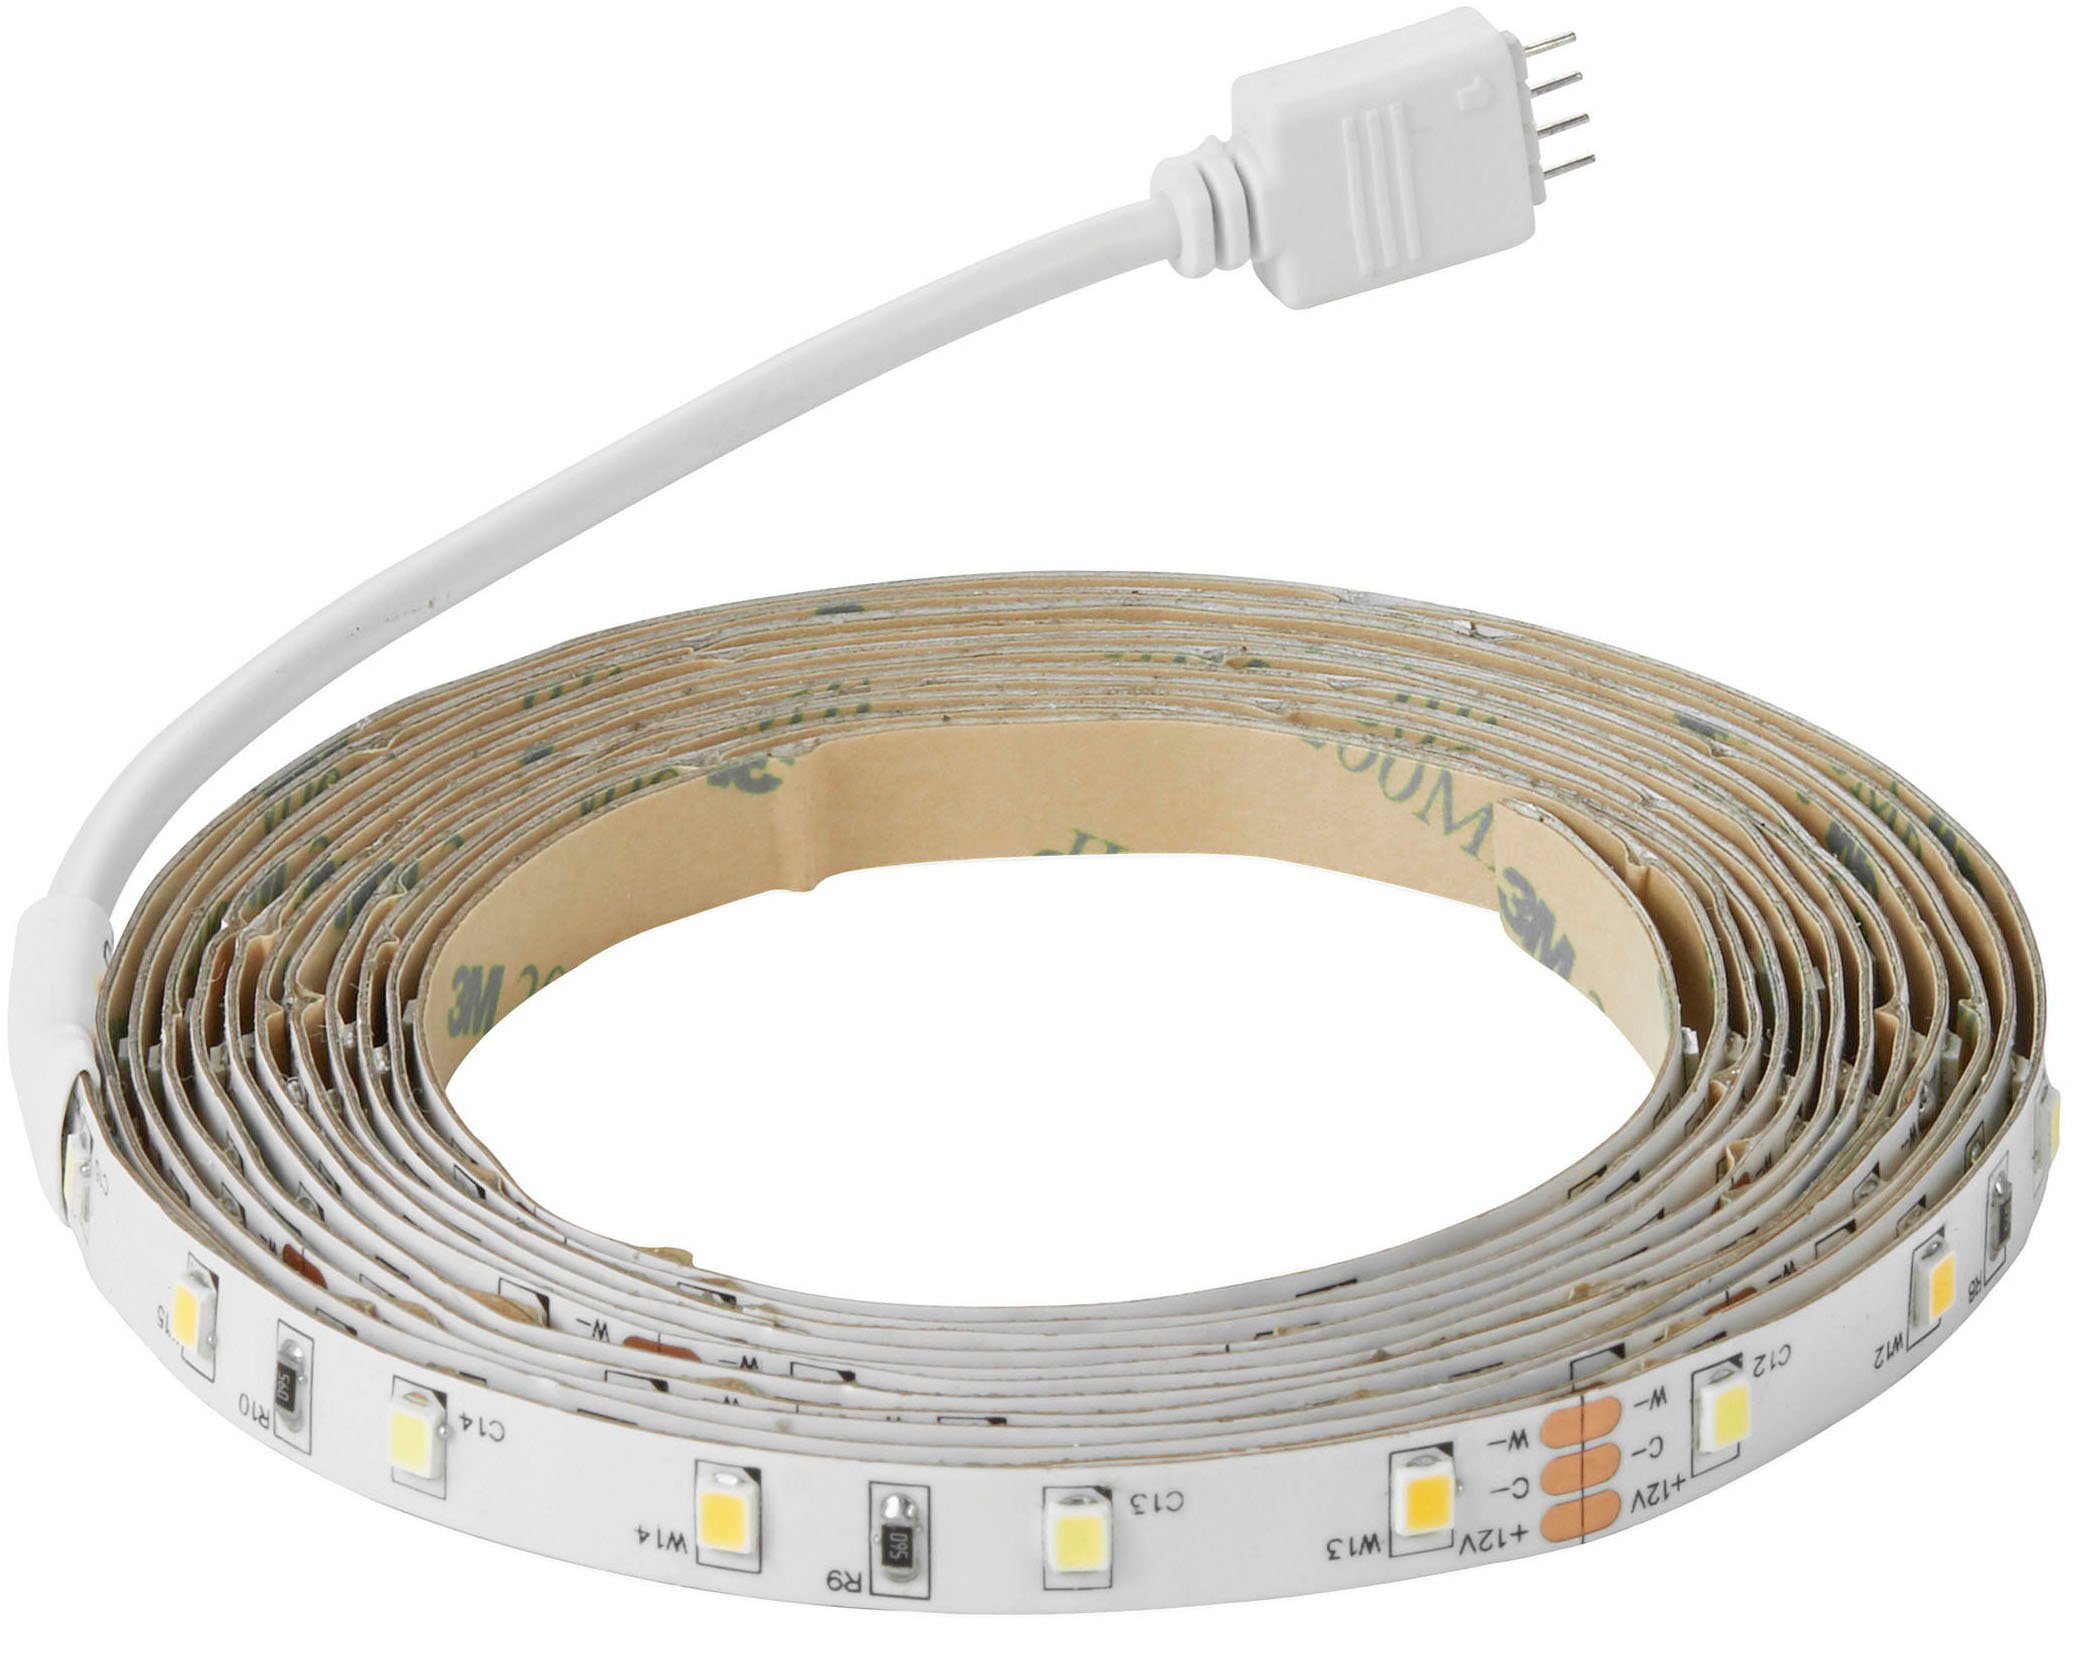 LED und Fernbedienung Einstellbares dimmbares inkl. weißes Nordlux Ledstrip, Licht, Stripe